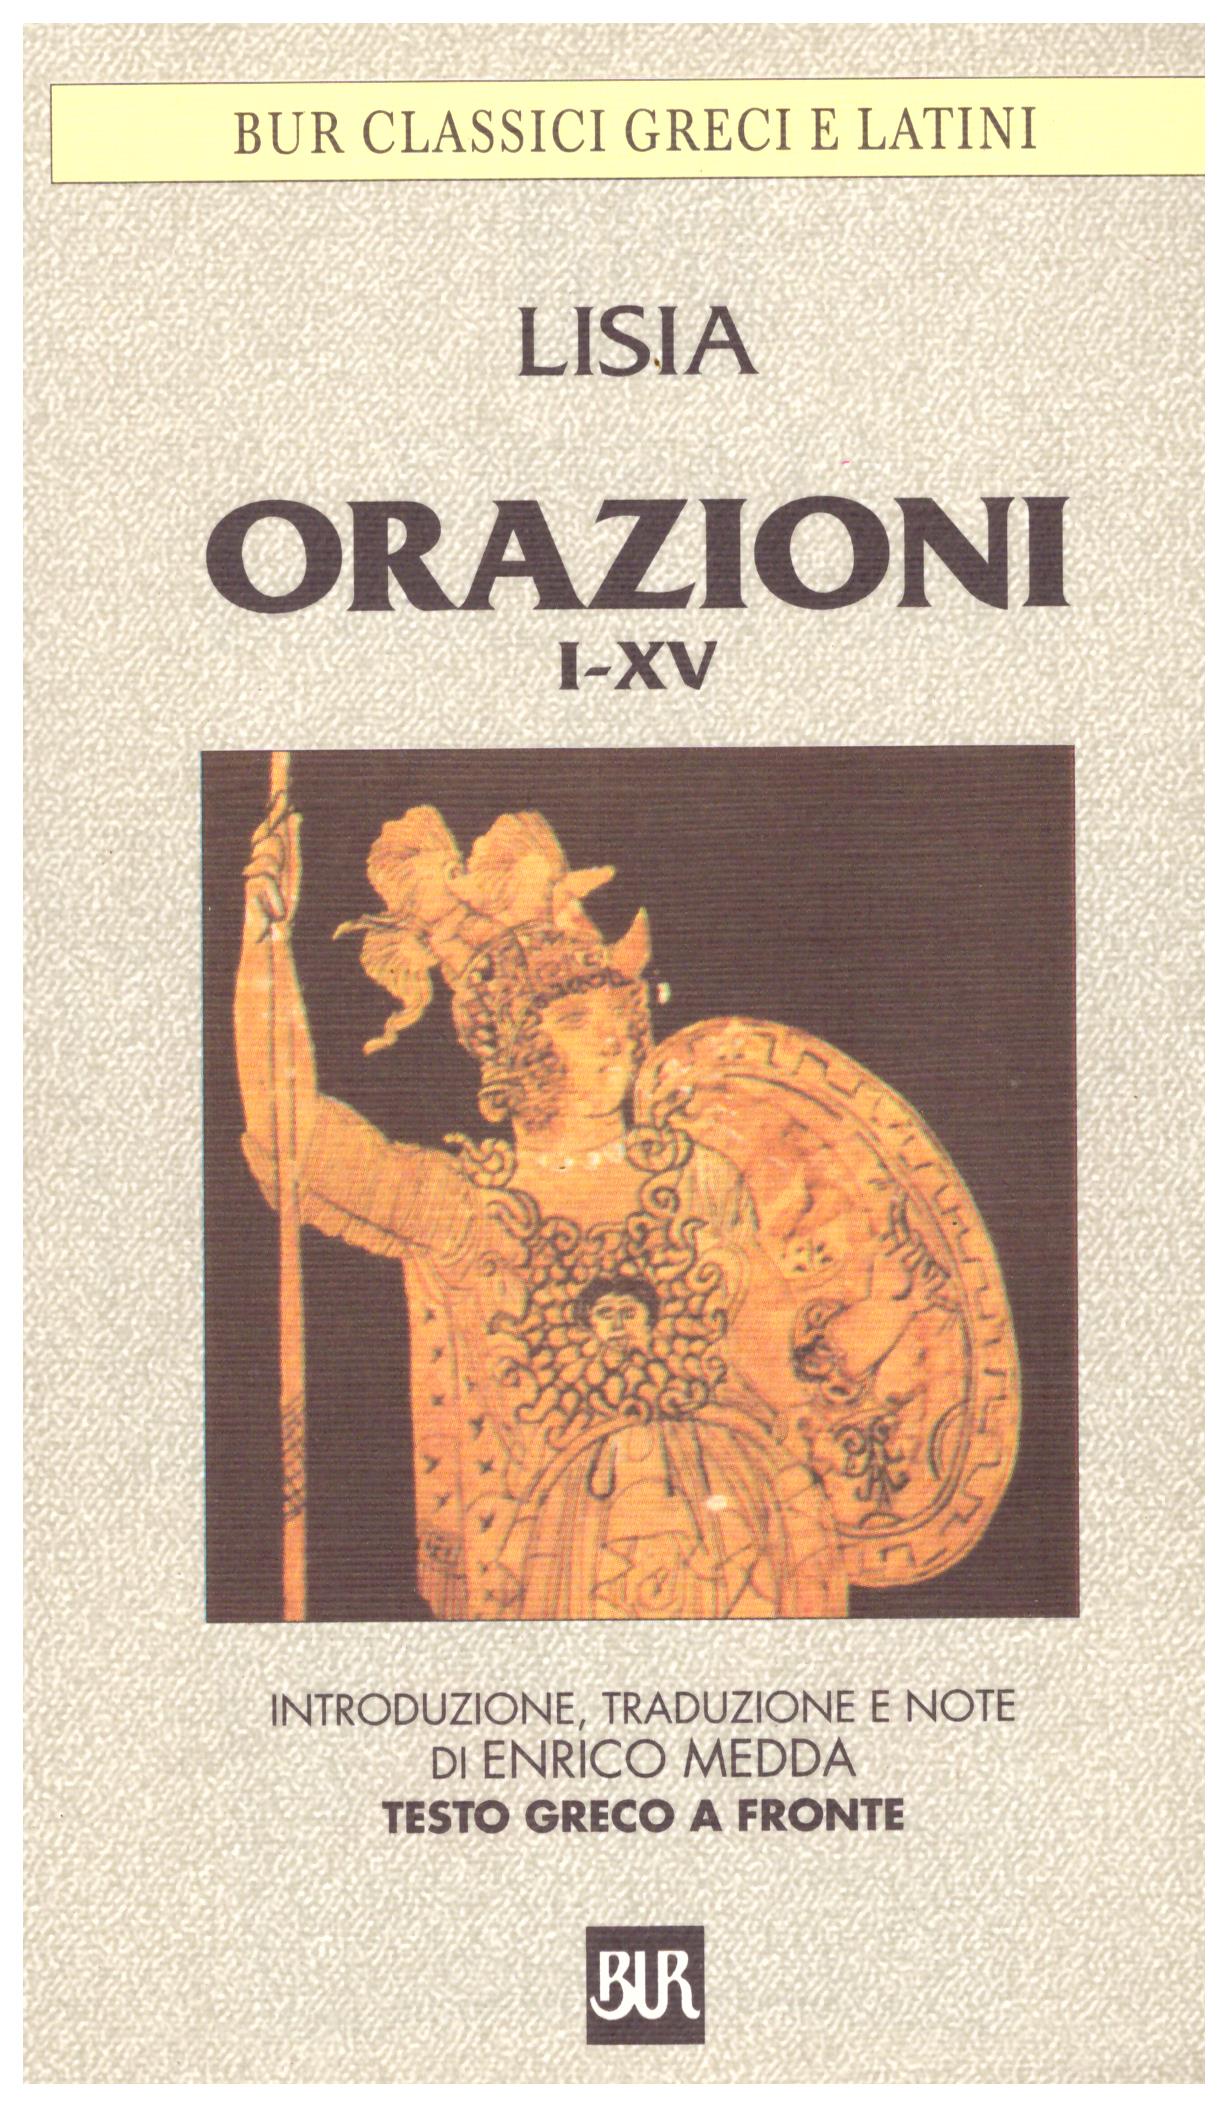 BUR Classici greci e latini Orazioni I-XV 